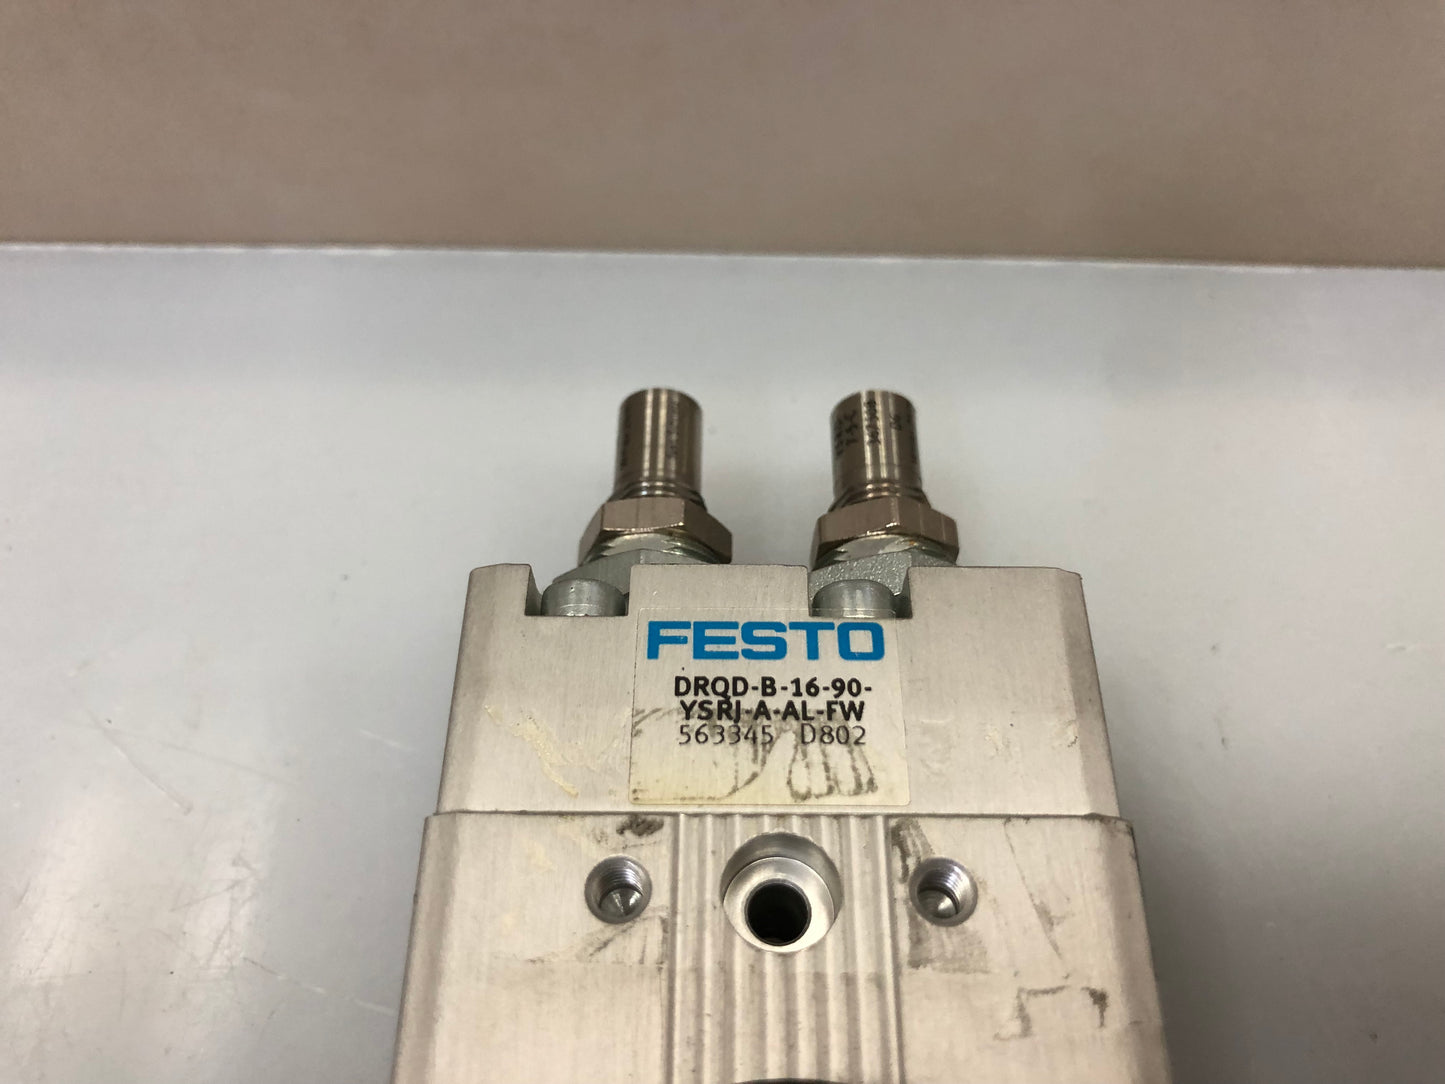 Festo DRQD-B-16-90-YSRJ-A-AL-FW 563345 Swing cylinder